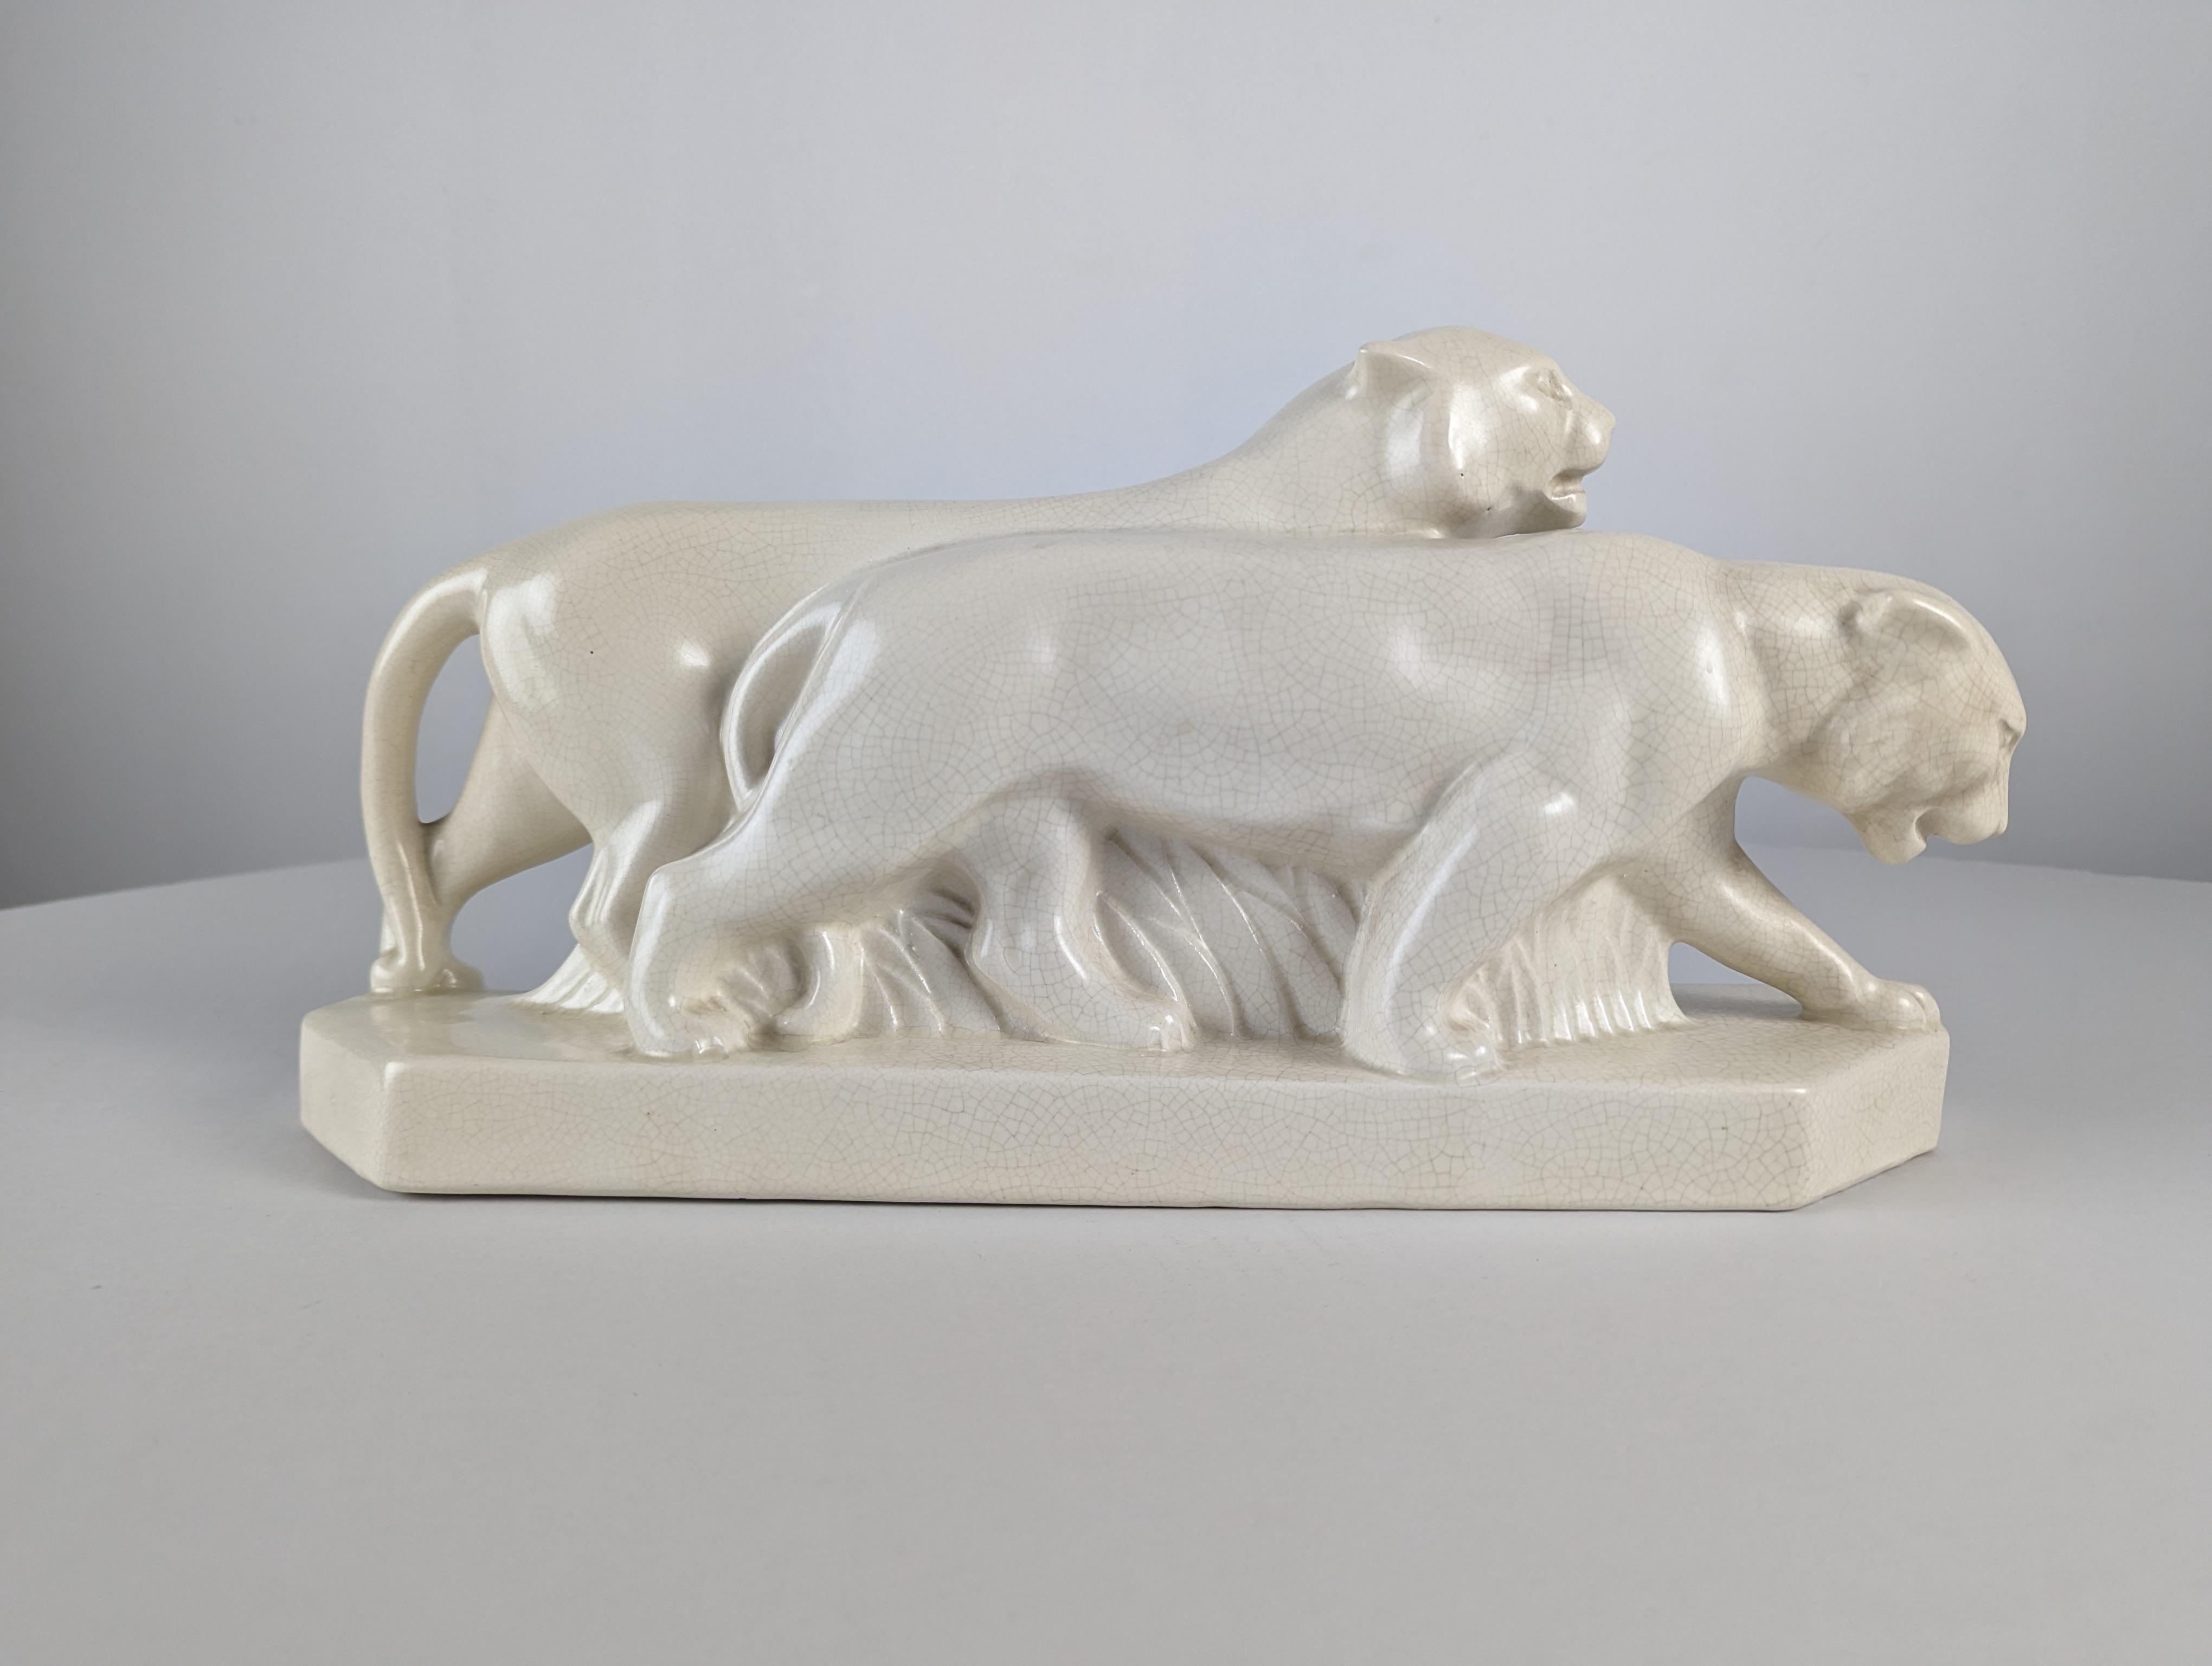 Escultura animal Art Deco de leones, 1920s In Good Condition For Sale In Benalmadena, ES